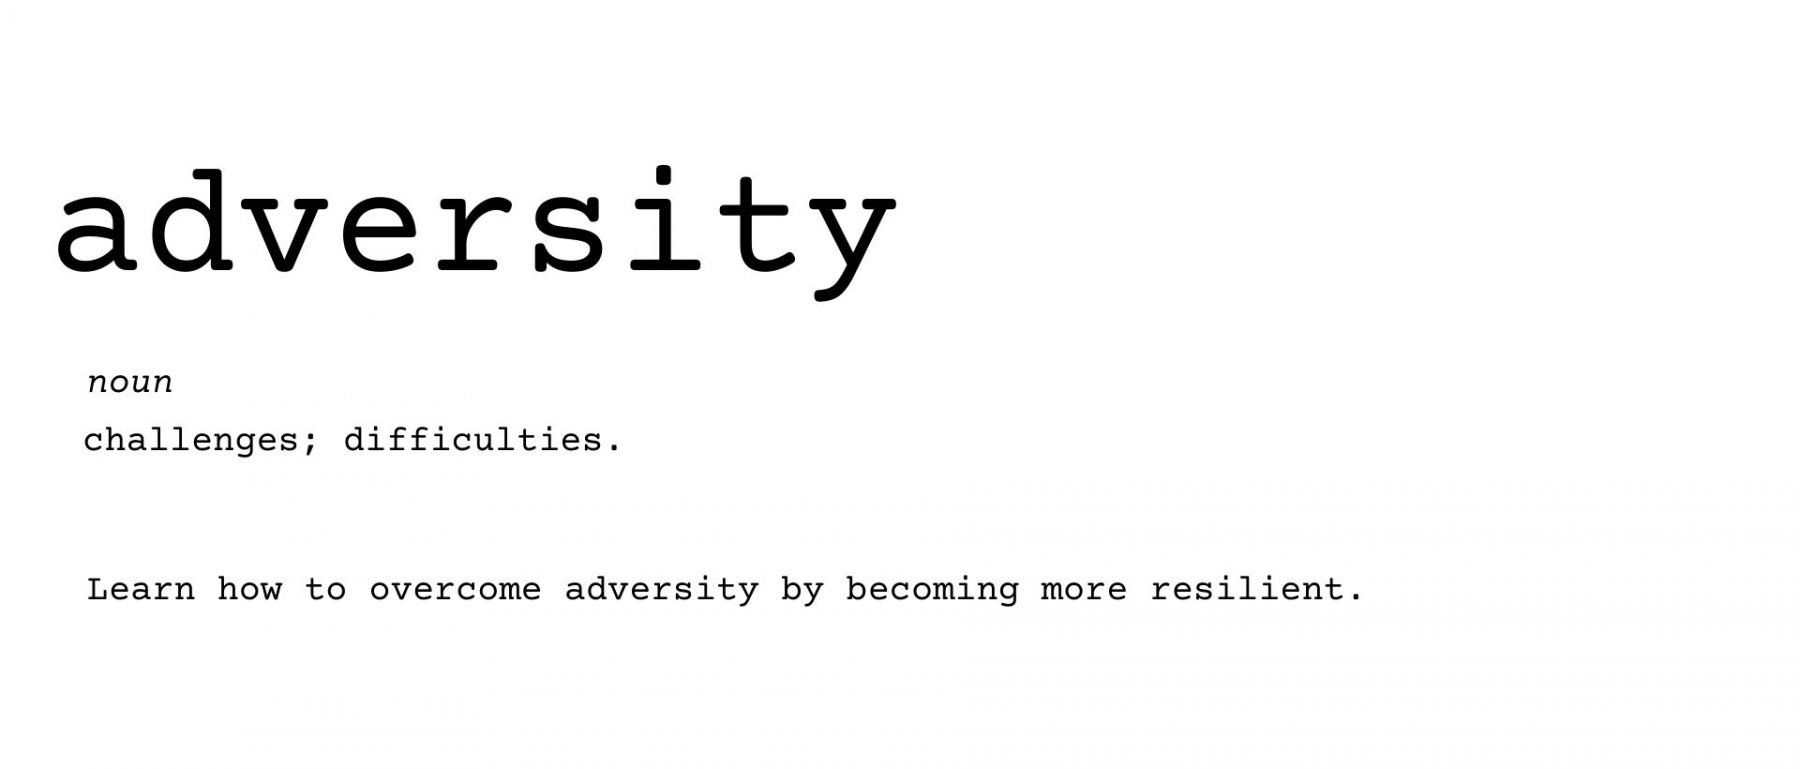 overcome adversity